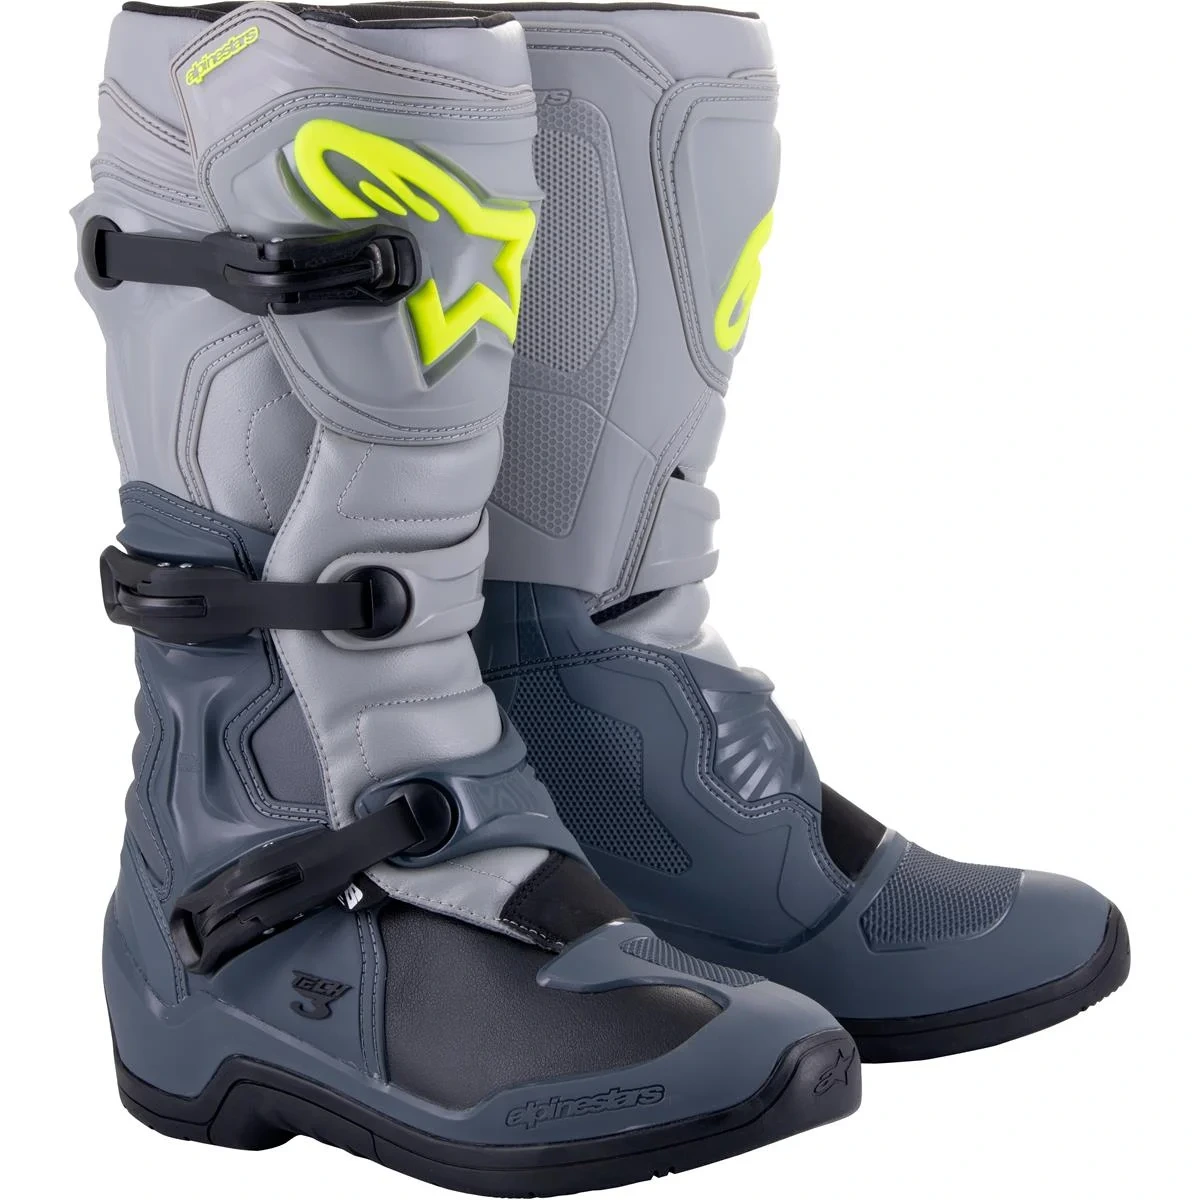 Image of Alpinestars Tech 3 Boots Dark Gray Light Gray Black Size US 5 EN